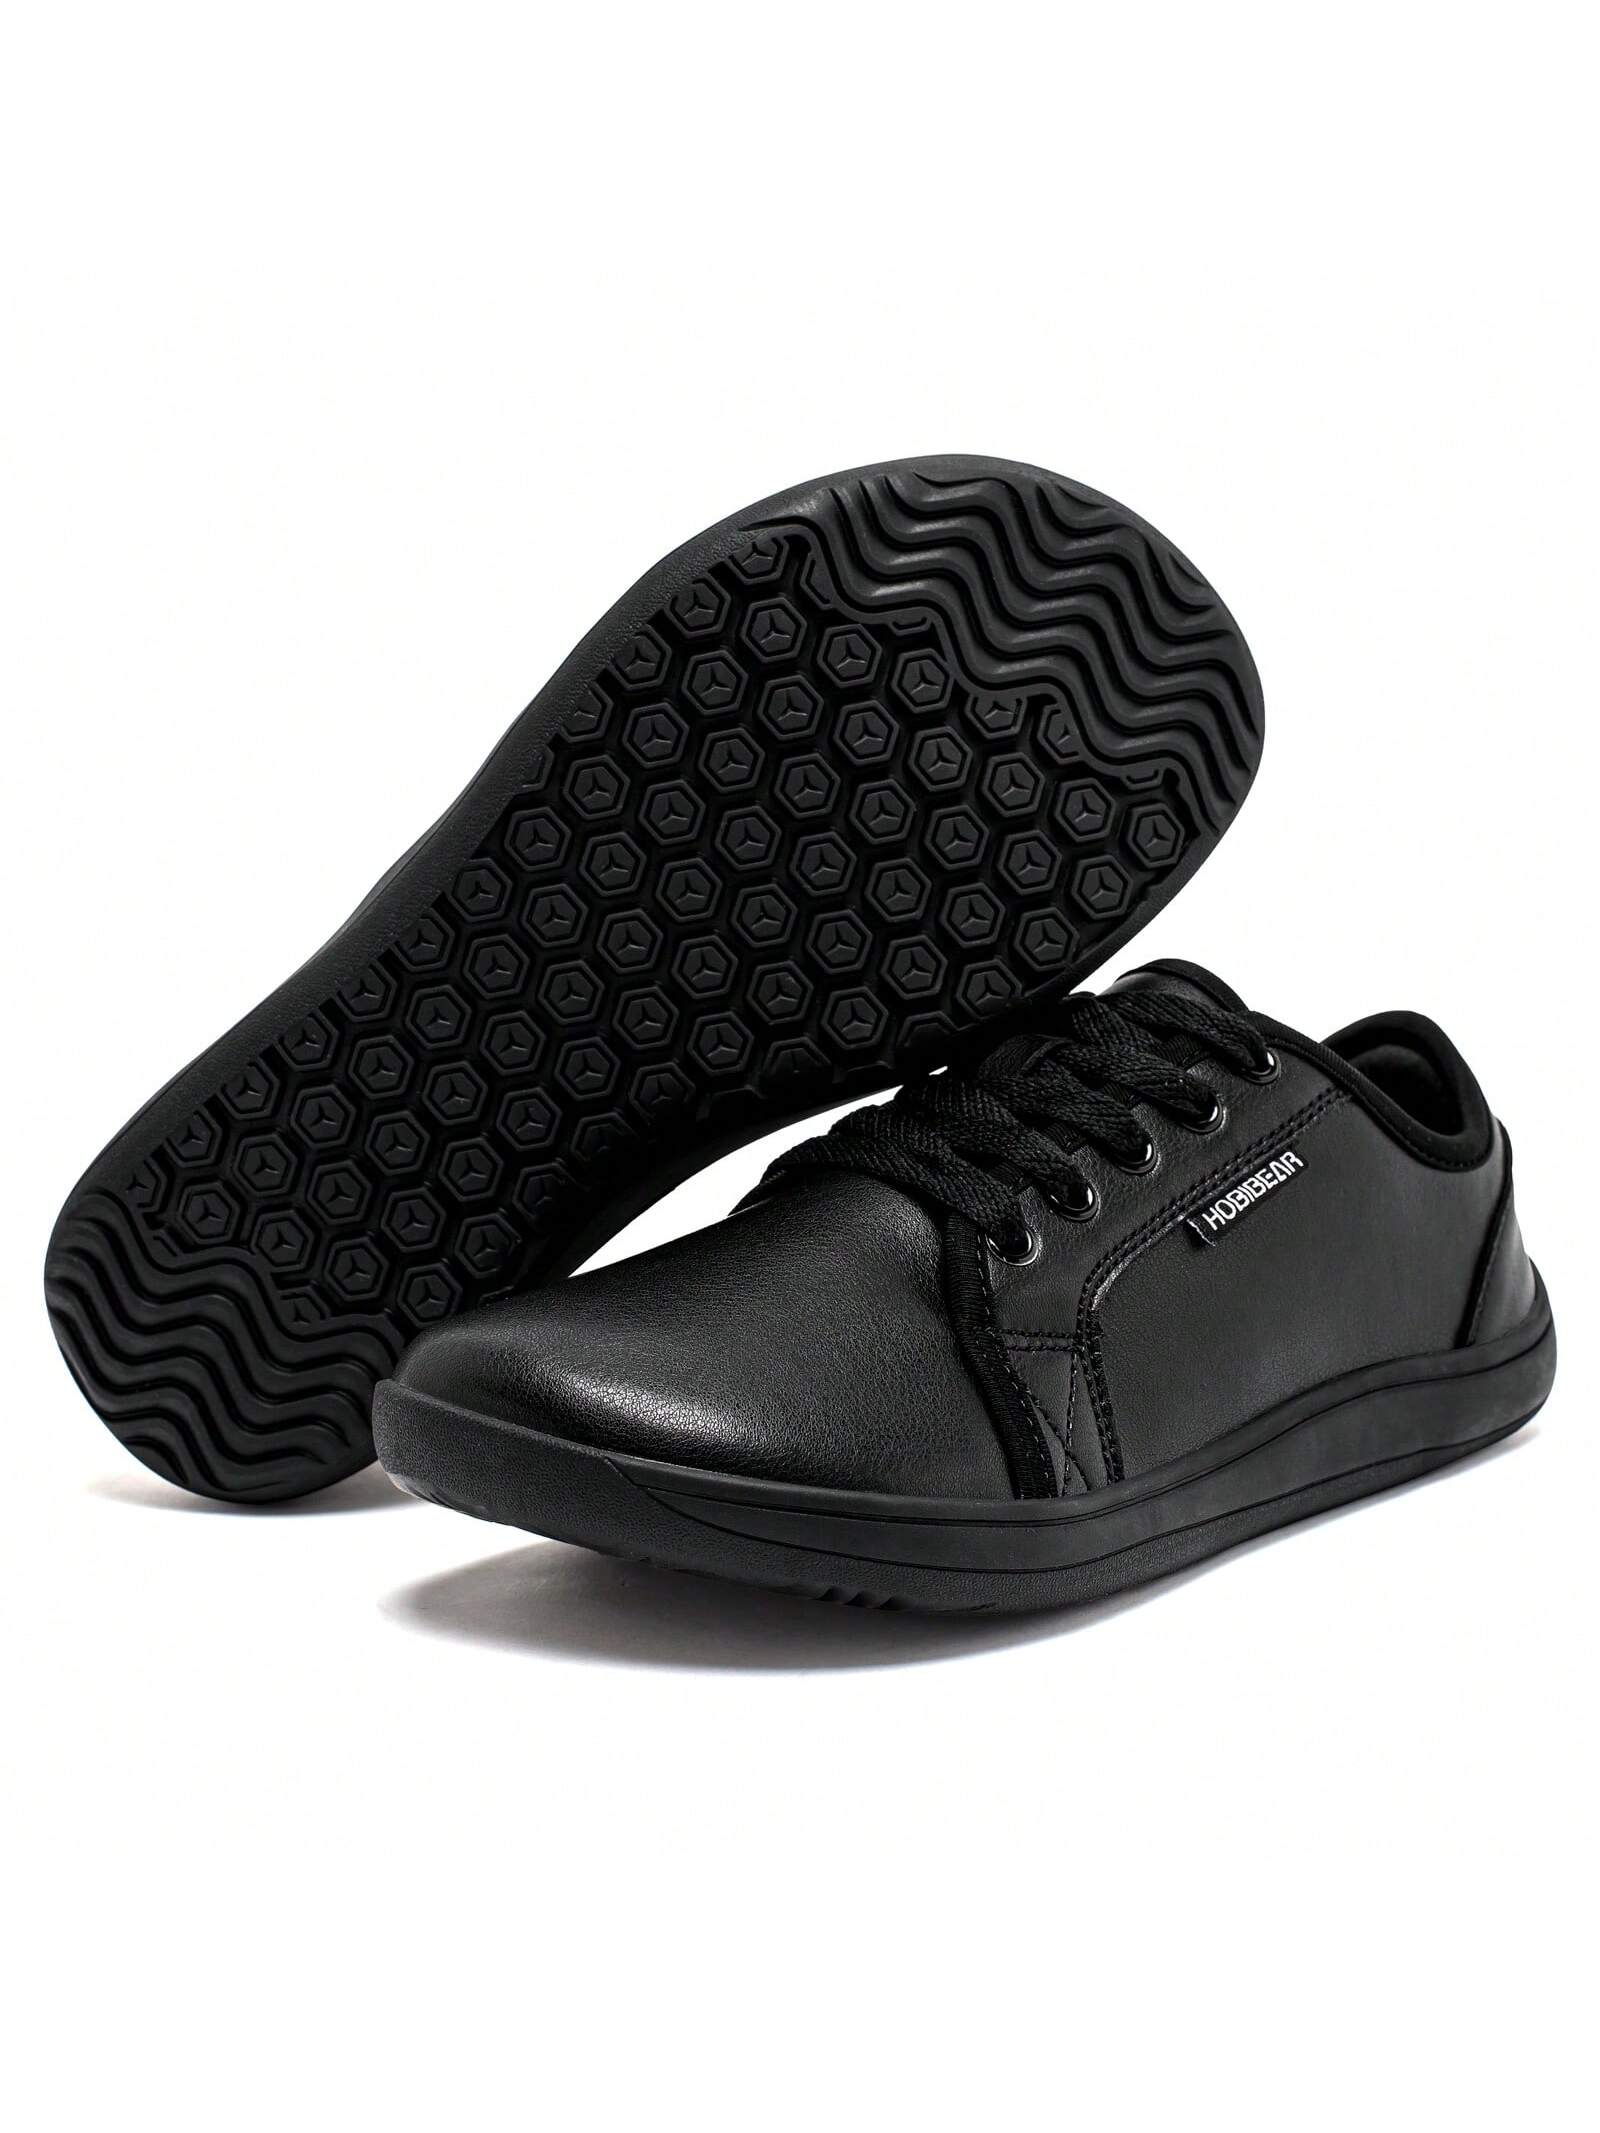 Спортивная обувь унисекс с широким носком, черный спортивная обувь унисекс с широким носком черный